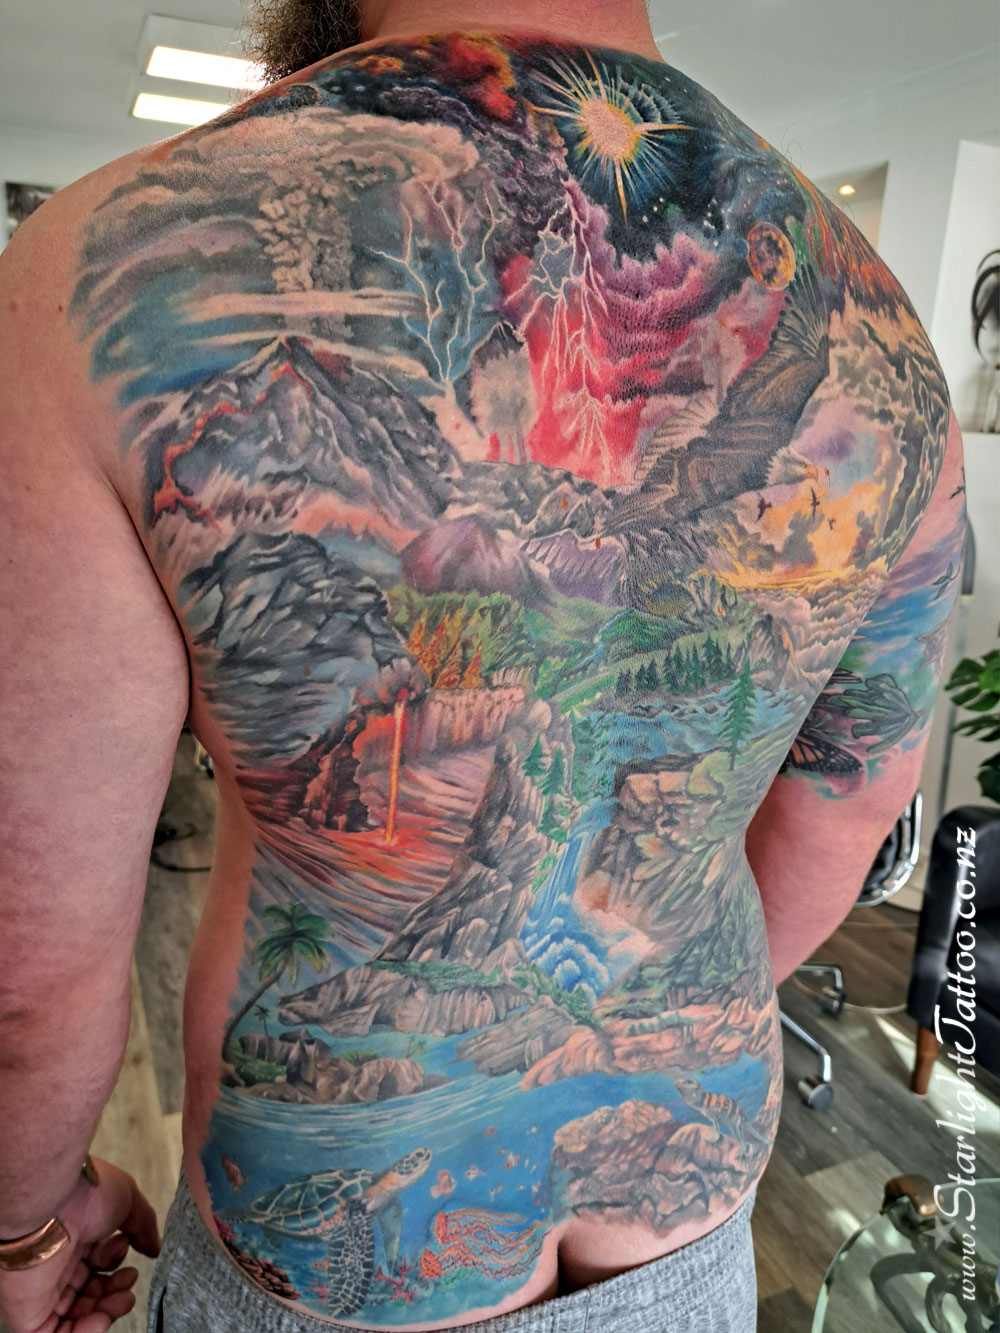 Whole back tattoo